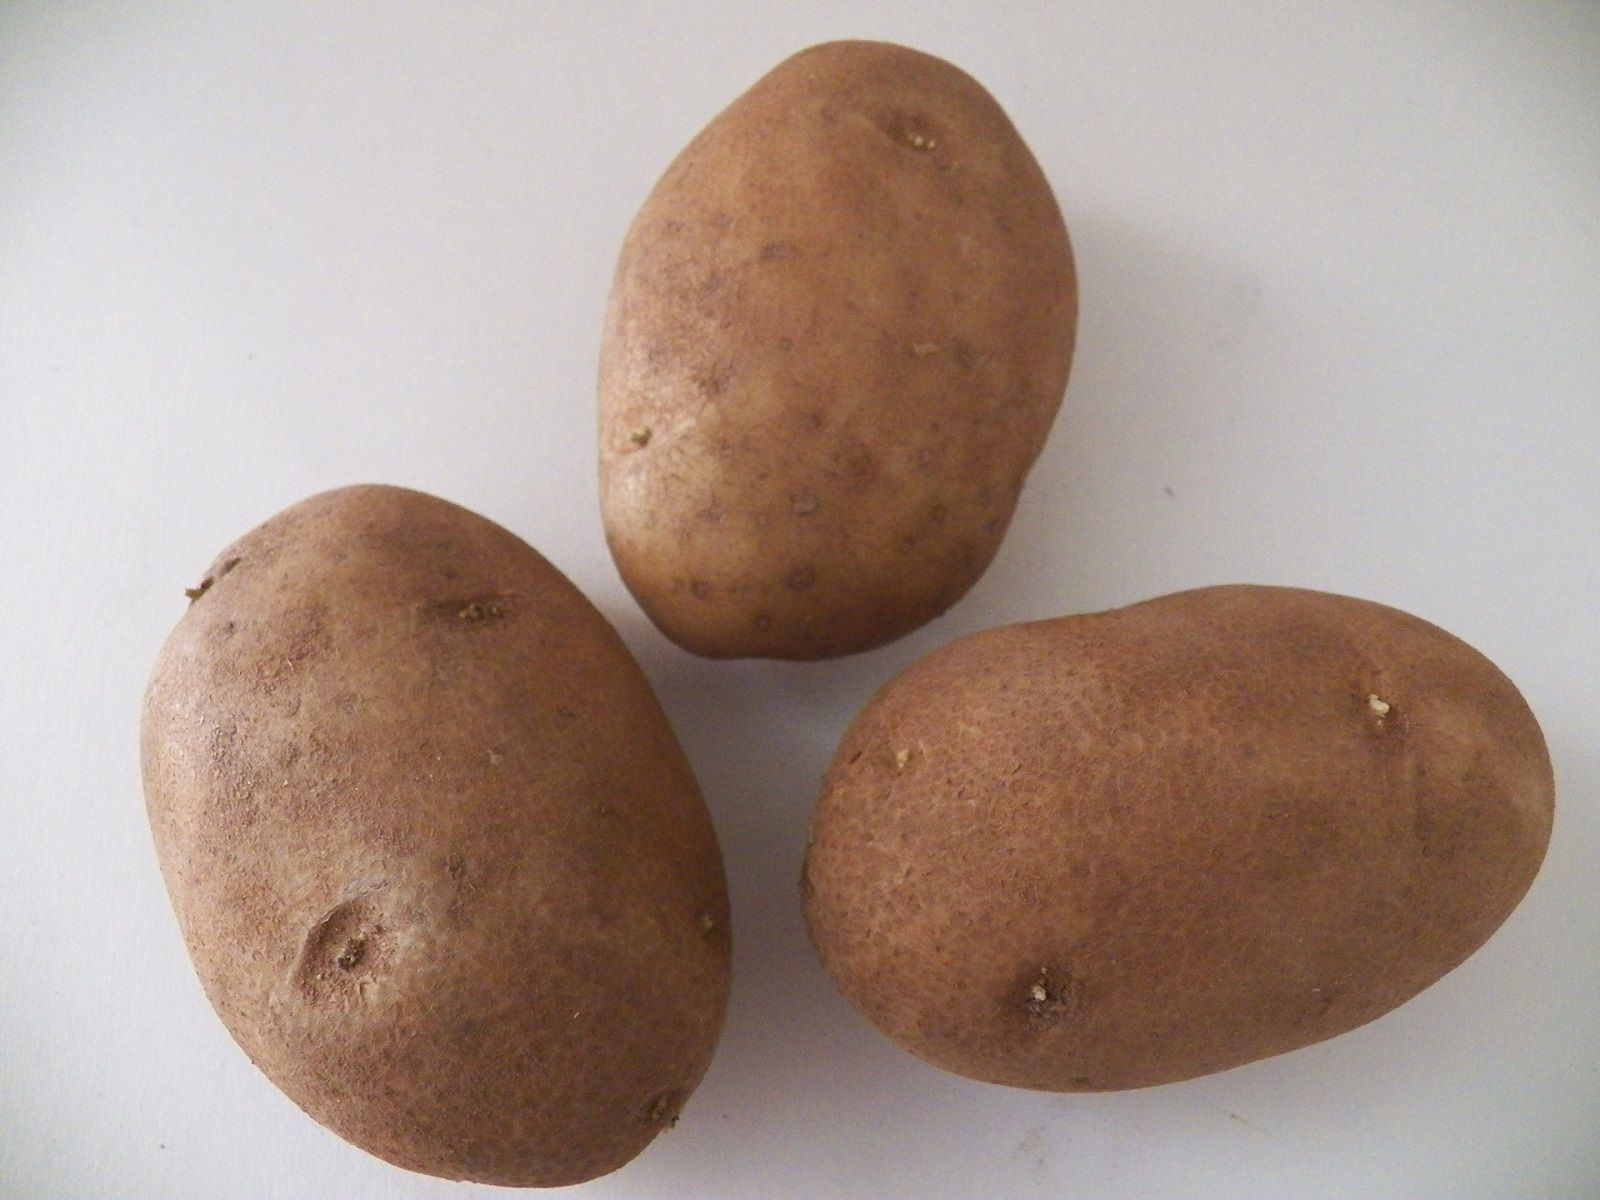 Come evitare che le patate germoglino?